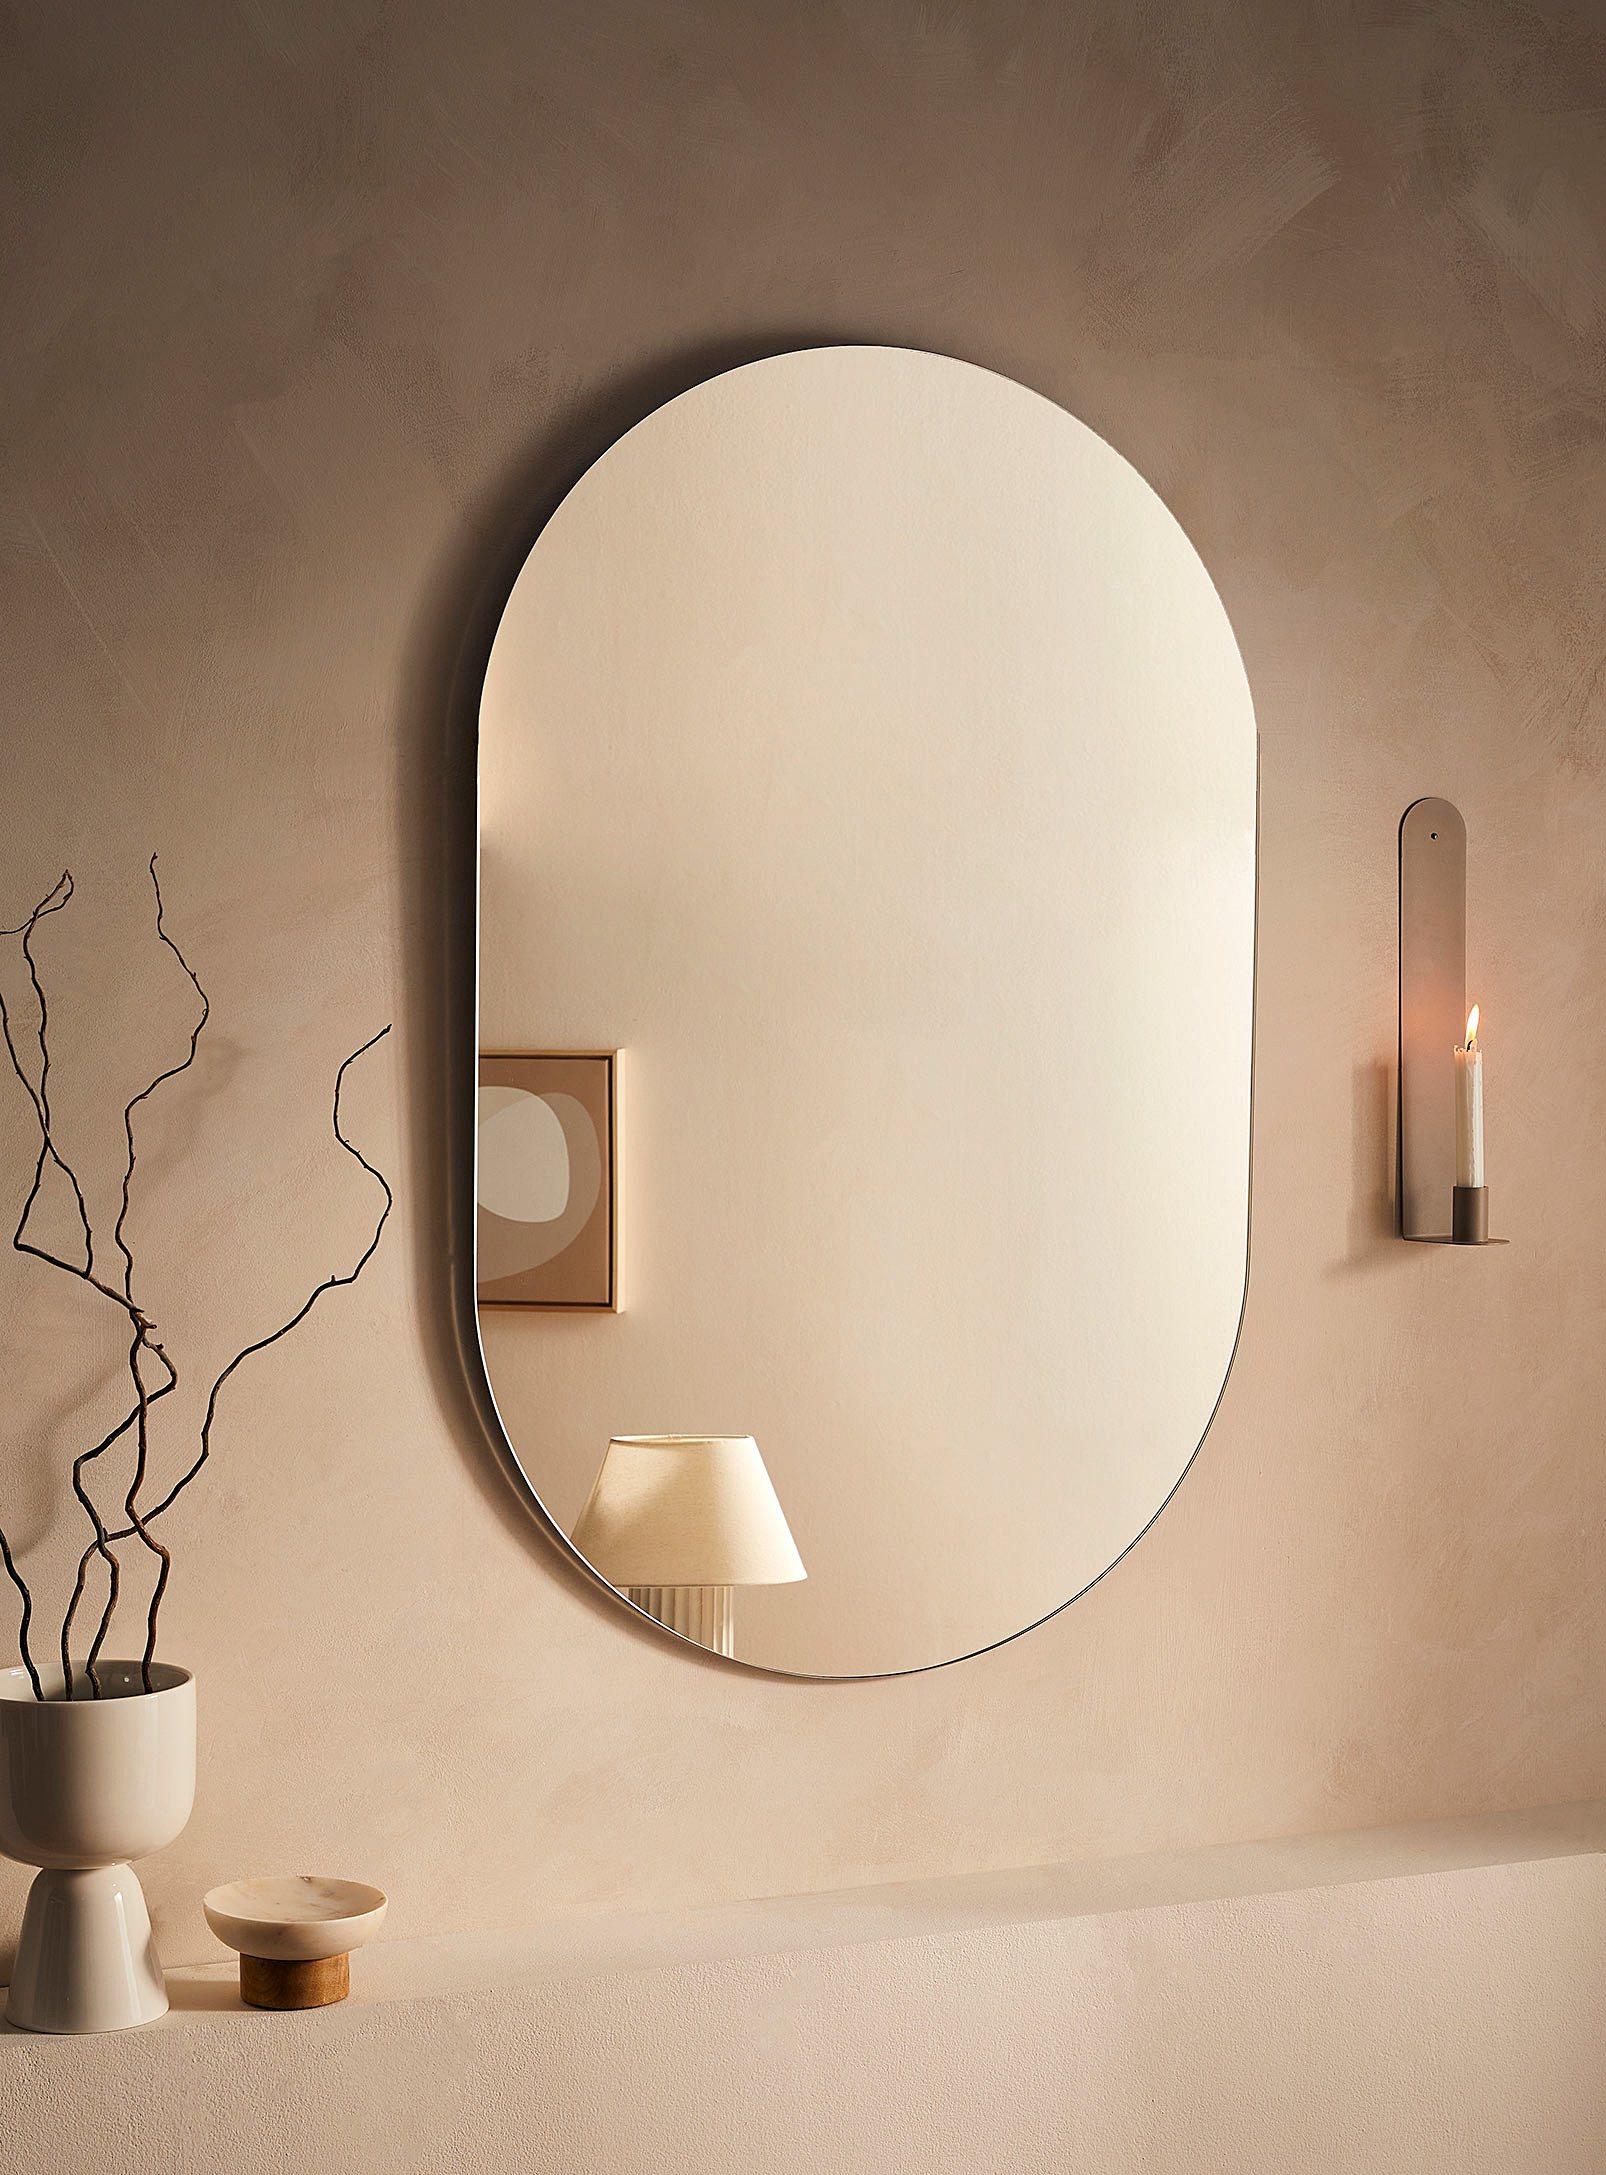 Simons Maison - Sleek rounded mirror